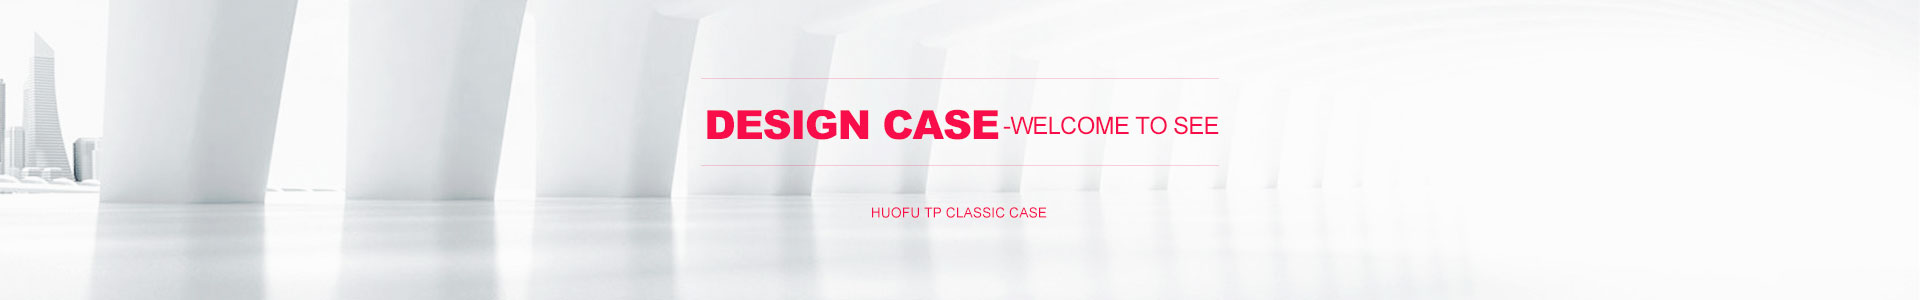 Design Case